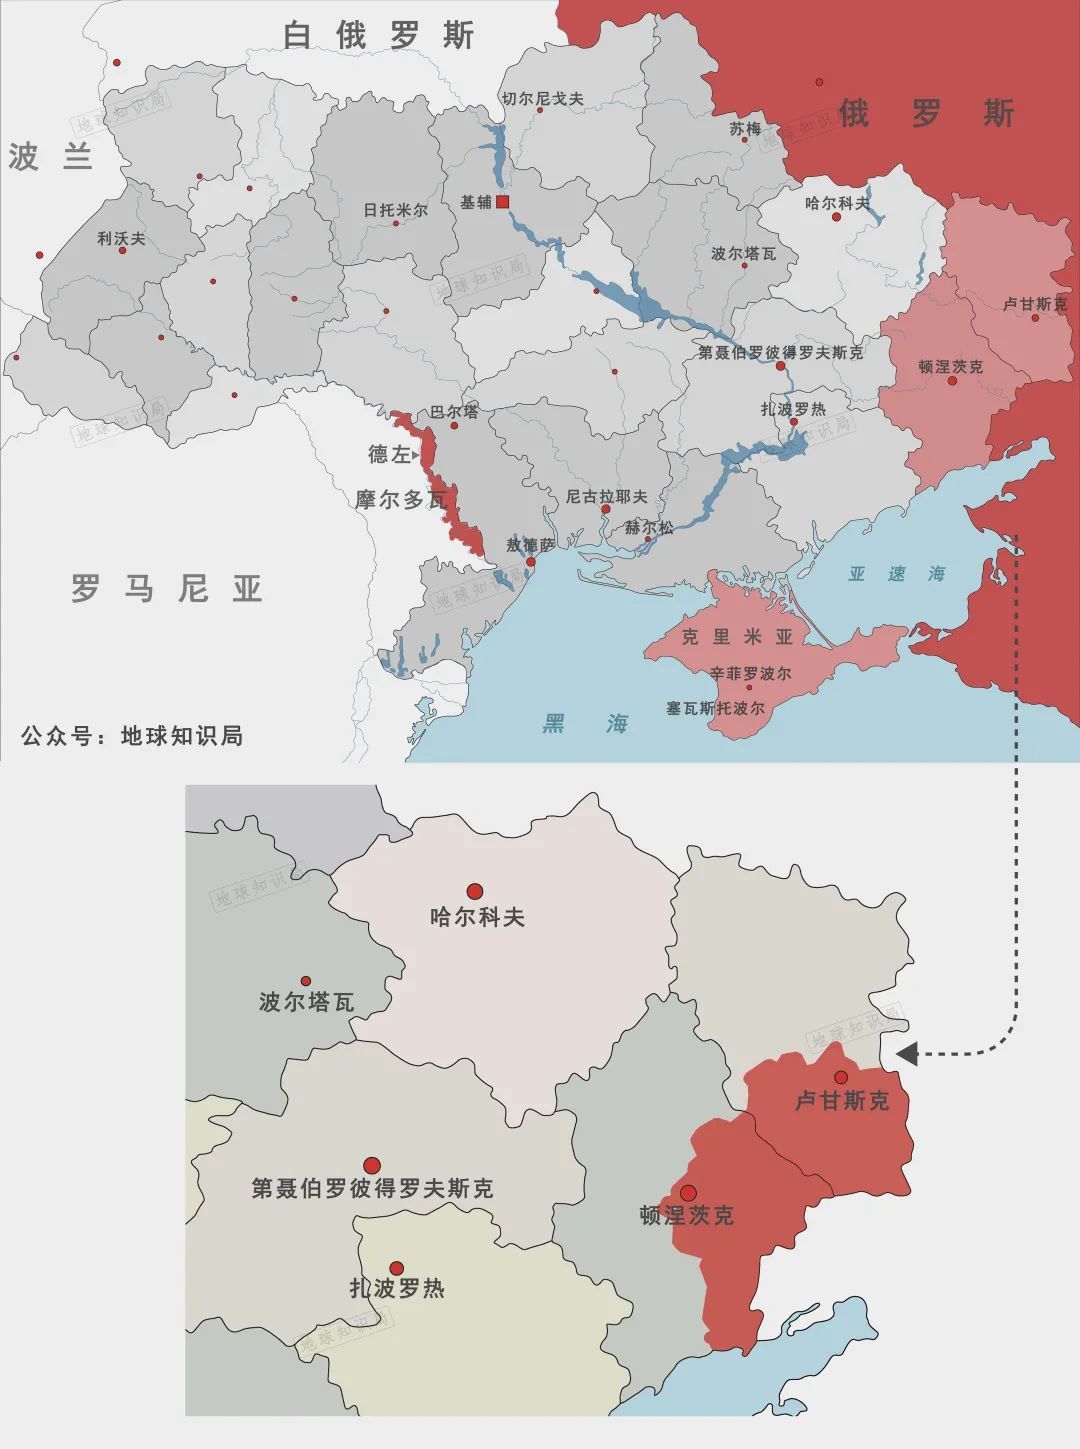 "卢甘斯克人民共和国"和"顿涅茨克人民共和国"只占有乌克兰卢甘斯克州